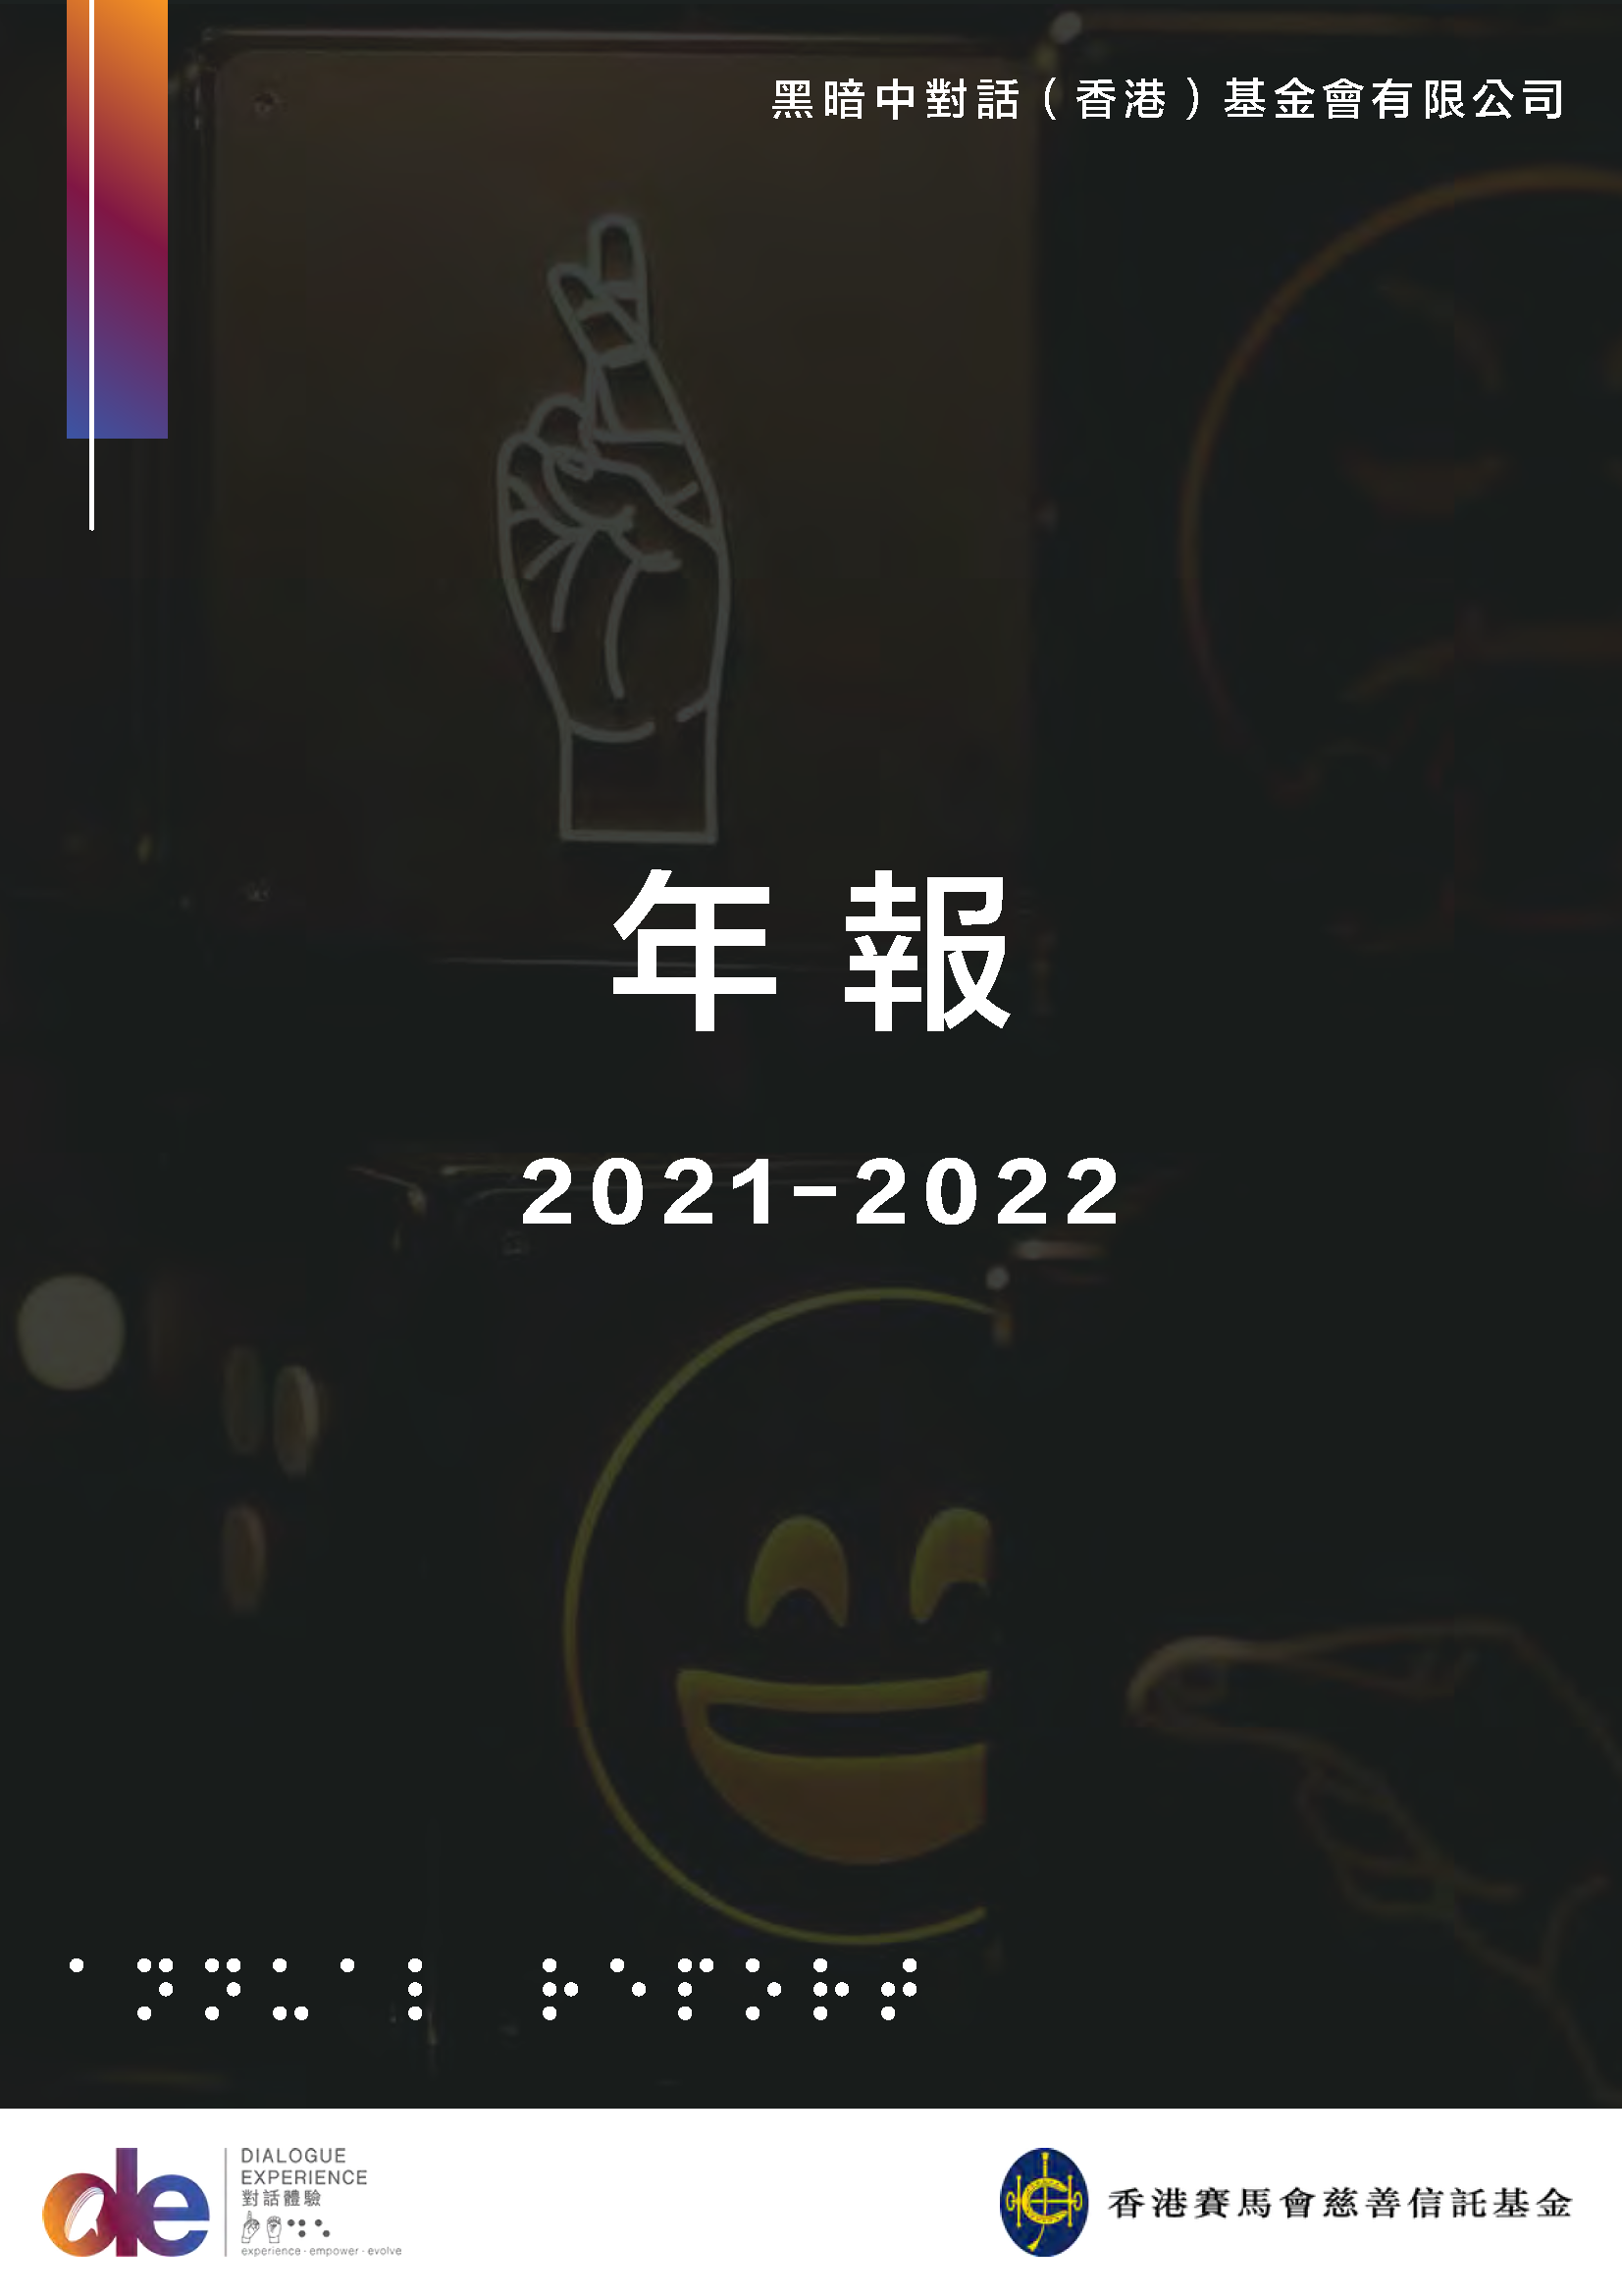 年度报告 2021-2022